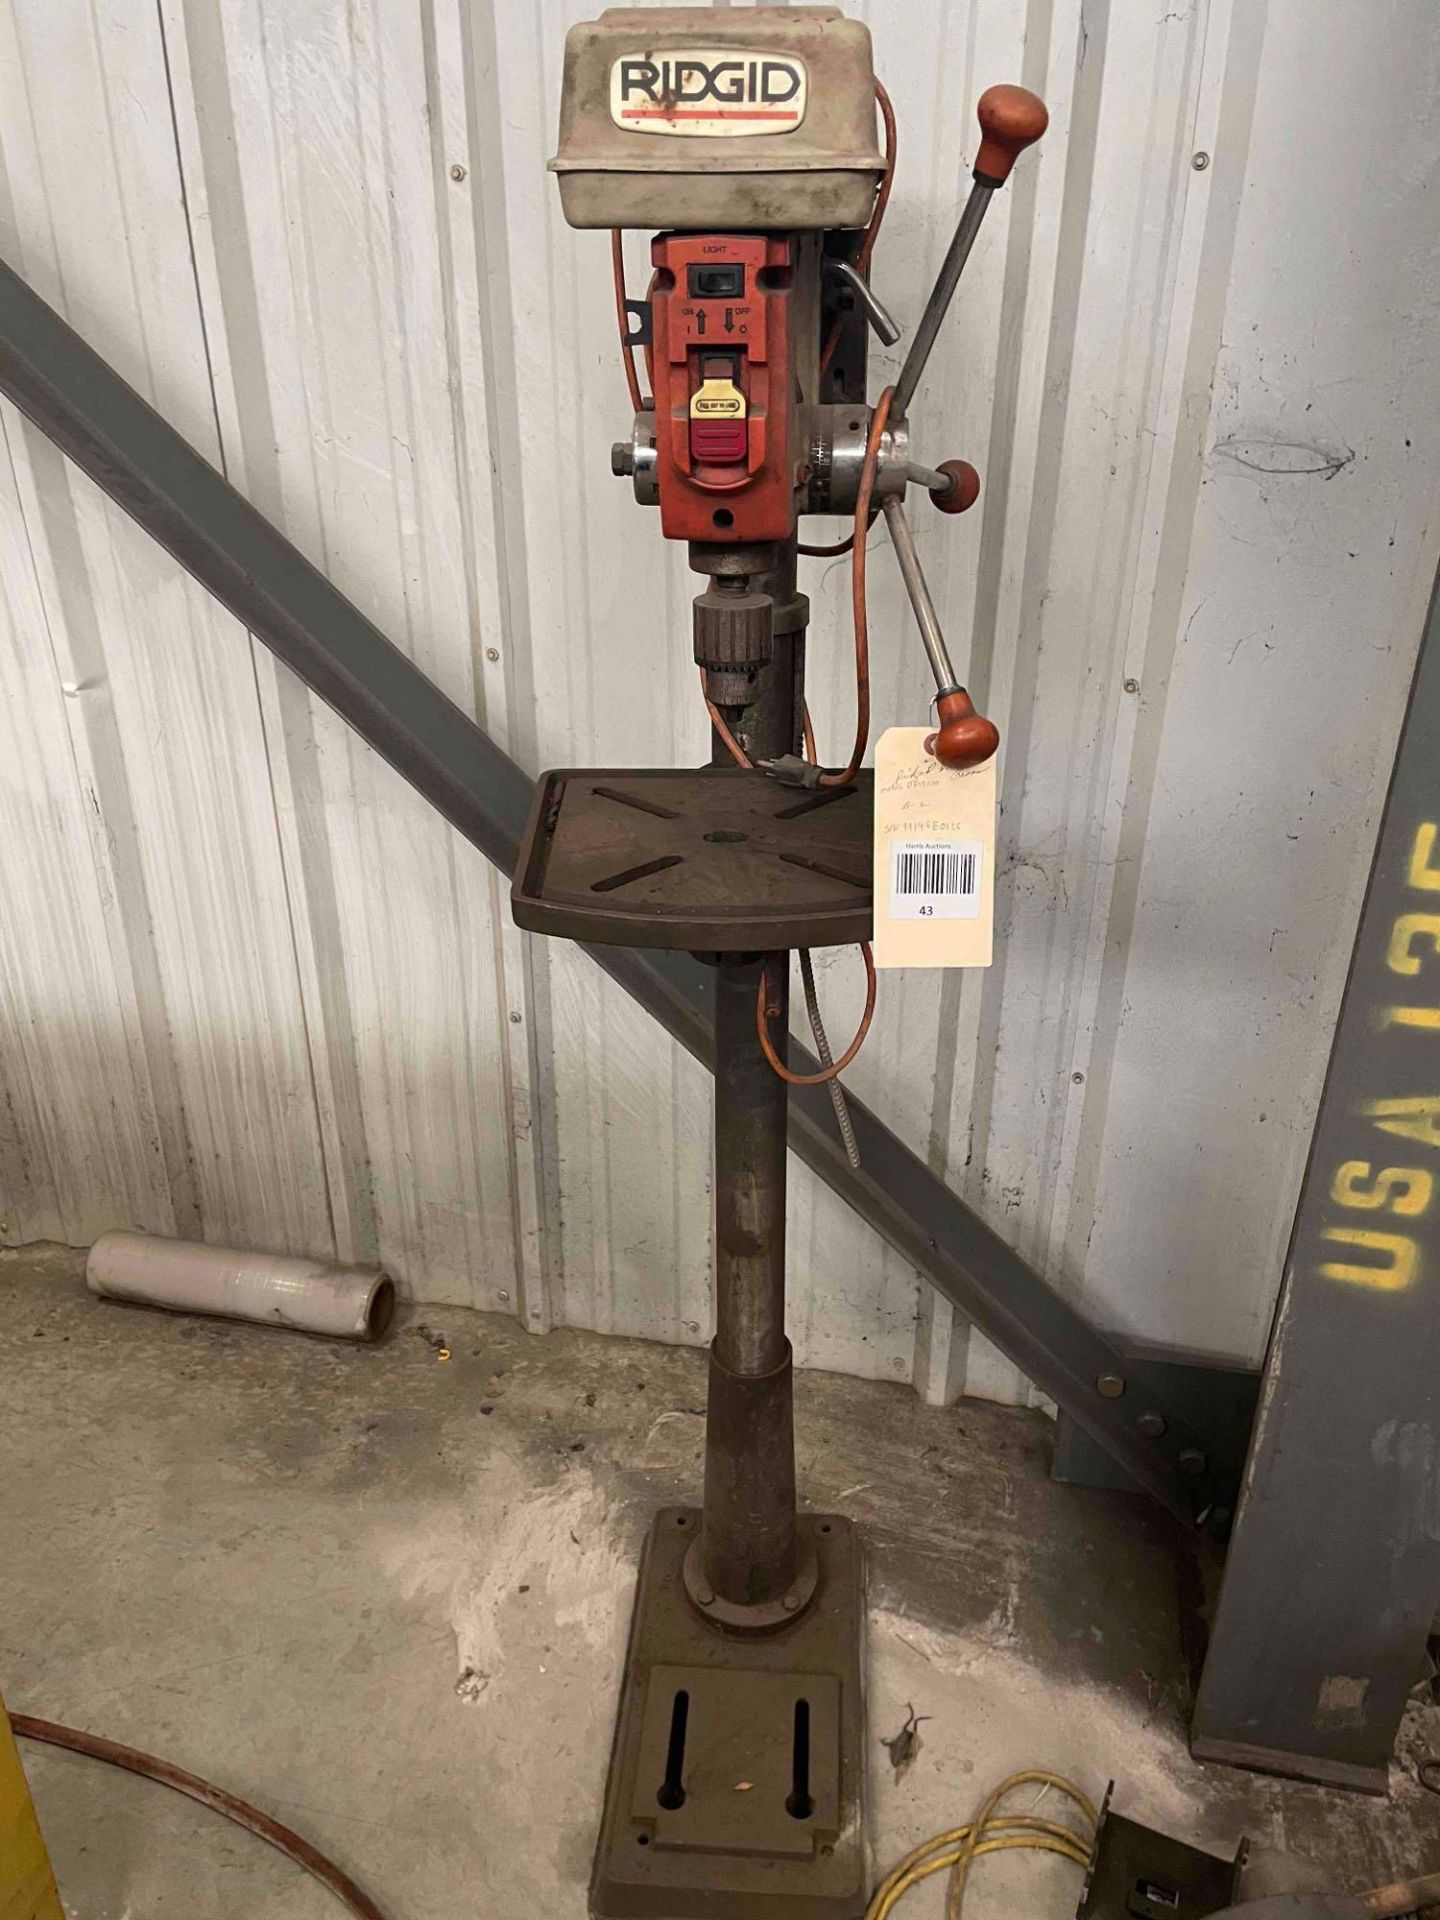 Ridgid Pedestal Drill Press, Model DP15000